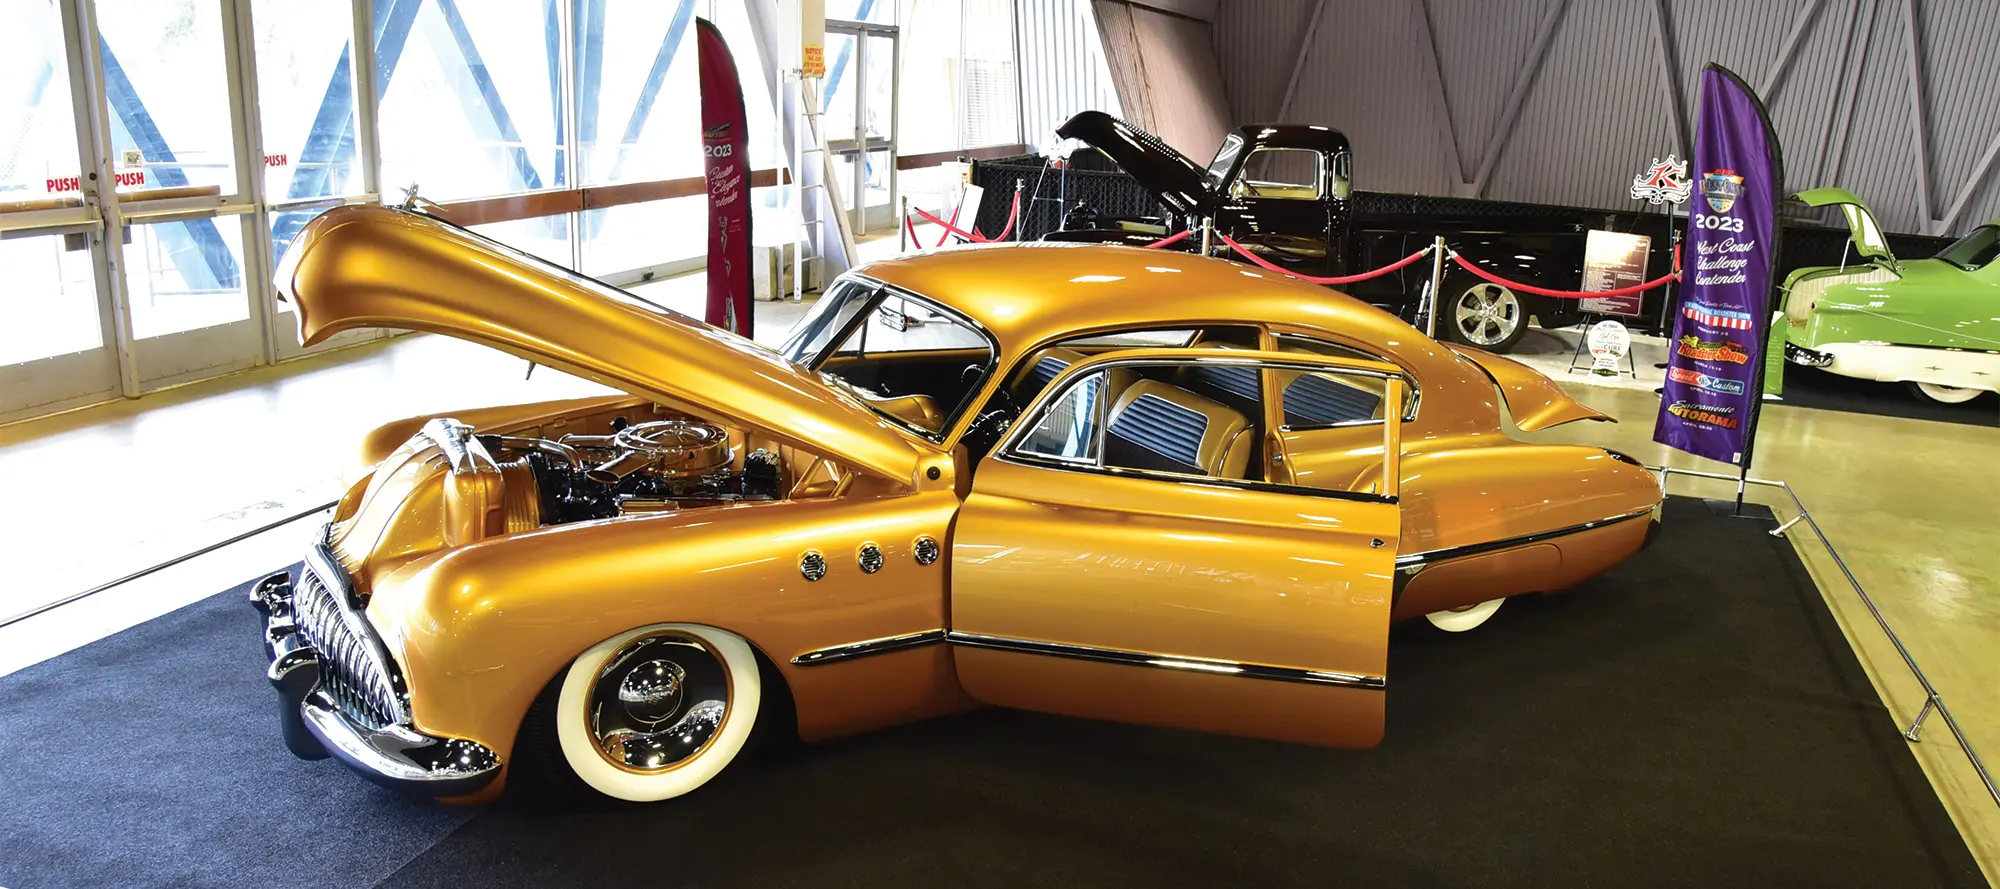 Metallic gold custom '49 Buick Sedanette